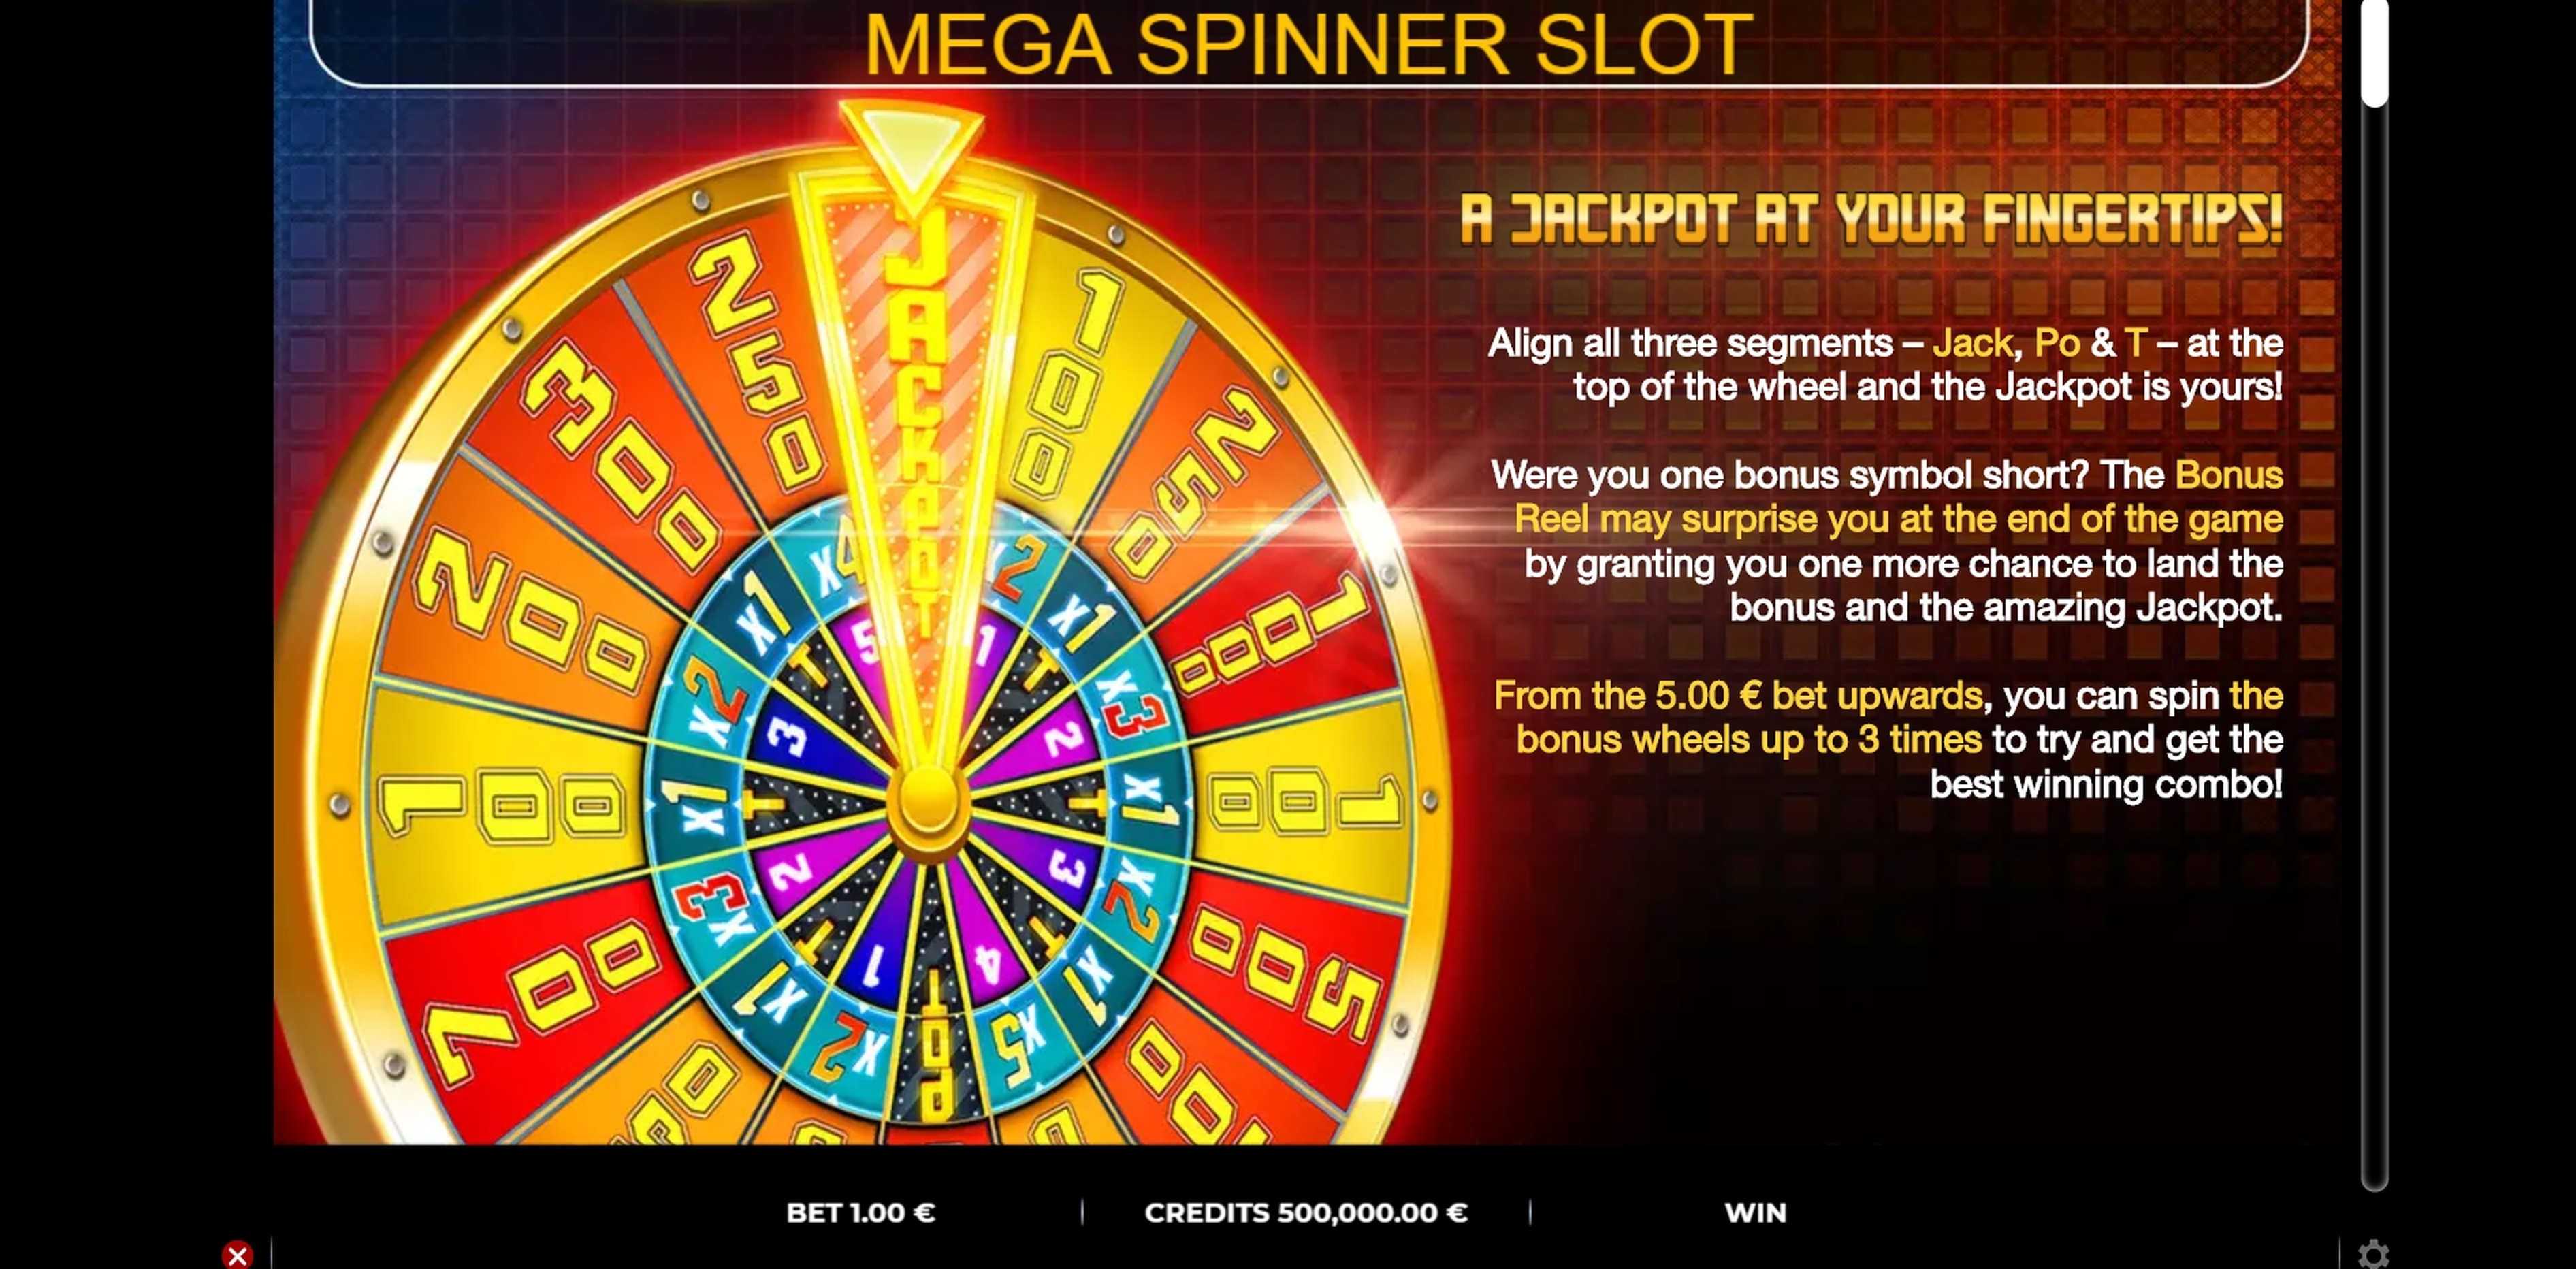 Info of Mega Spinner Slot Slot Game by GAMING1